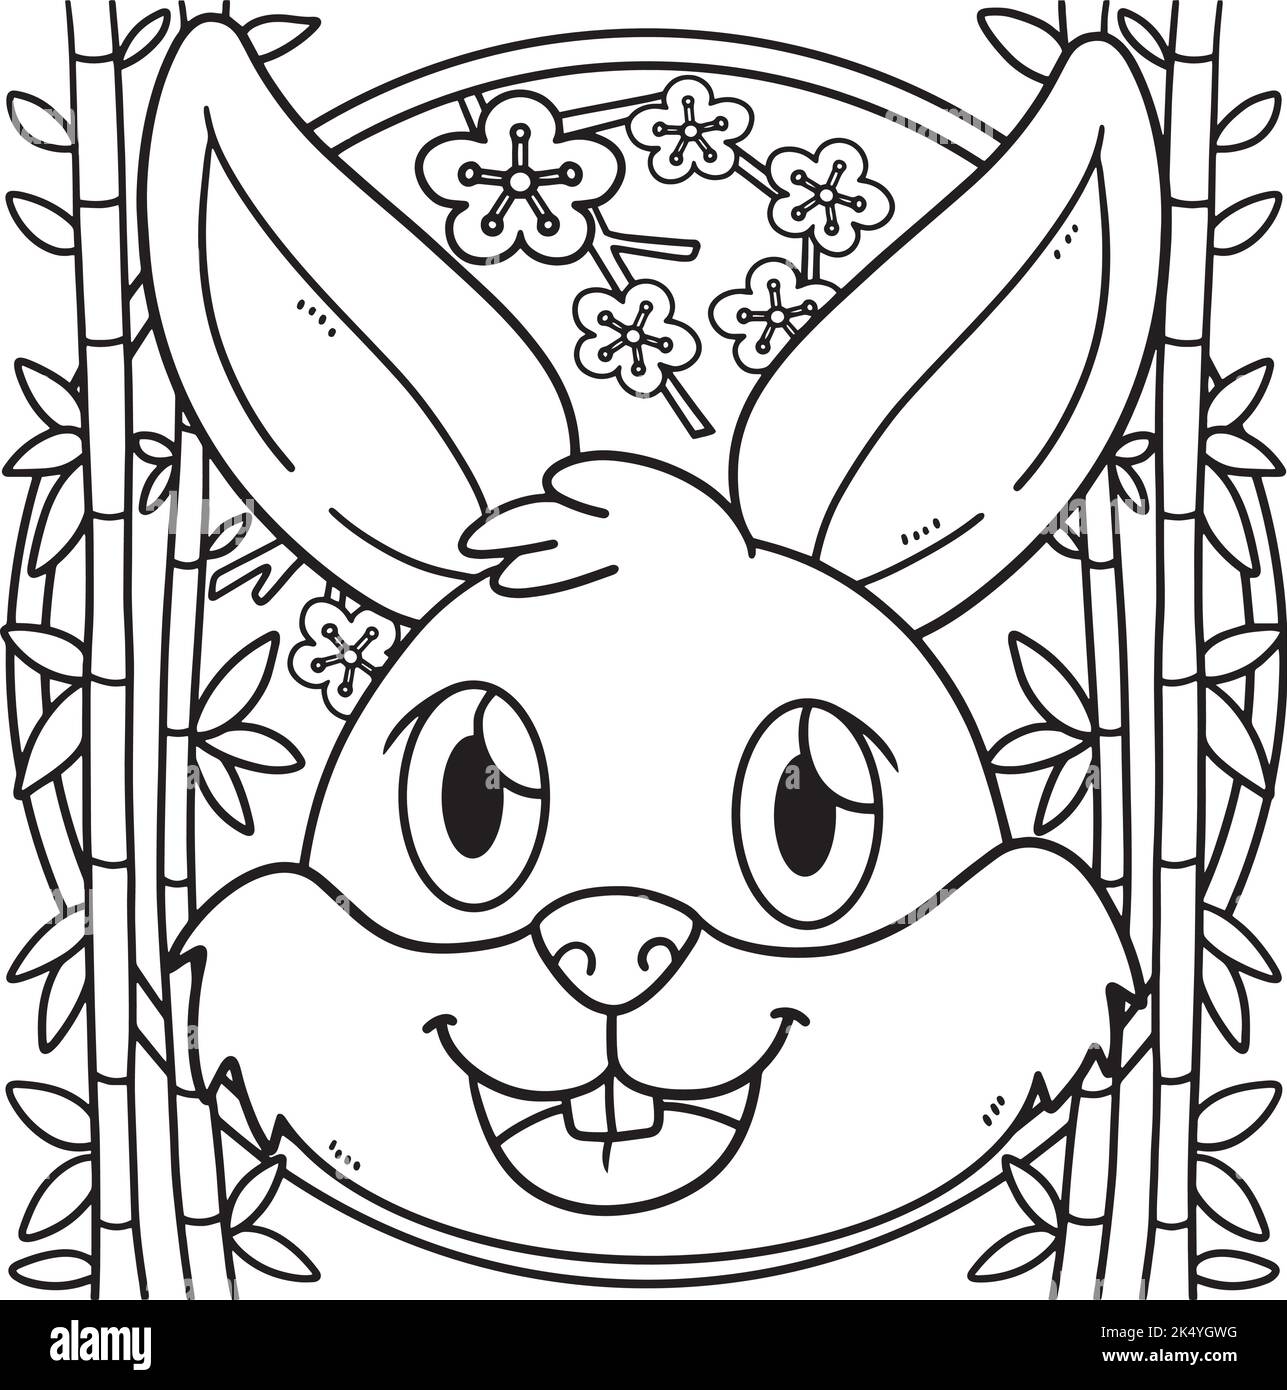 Lapin tête année de la page de coloration de lapin Illustration de Vecteur